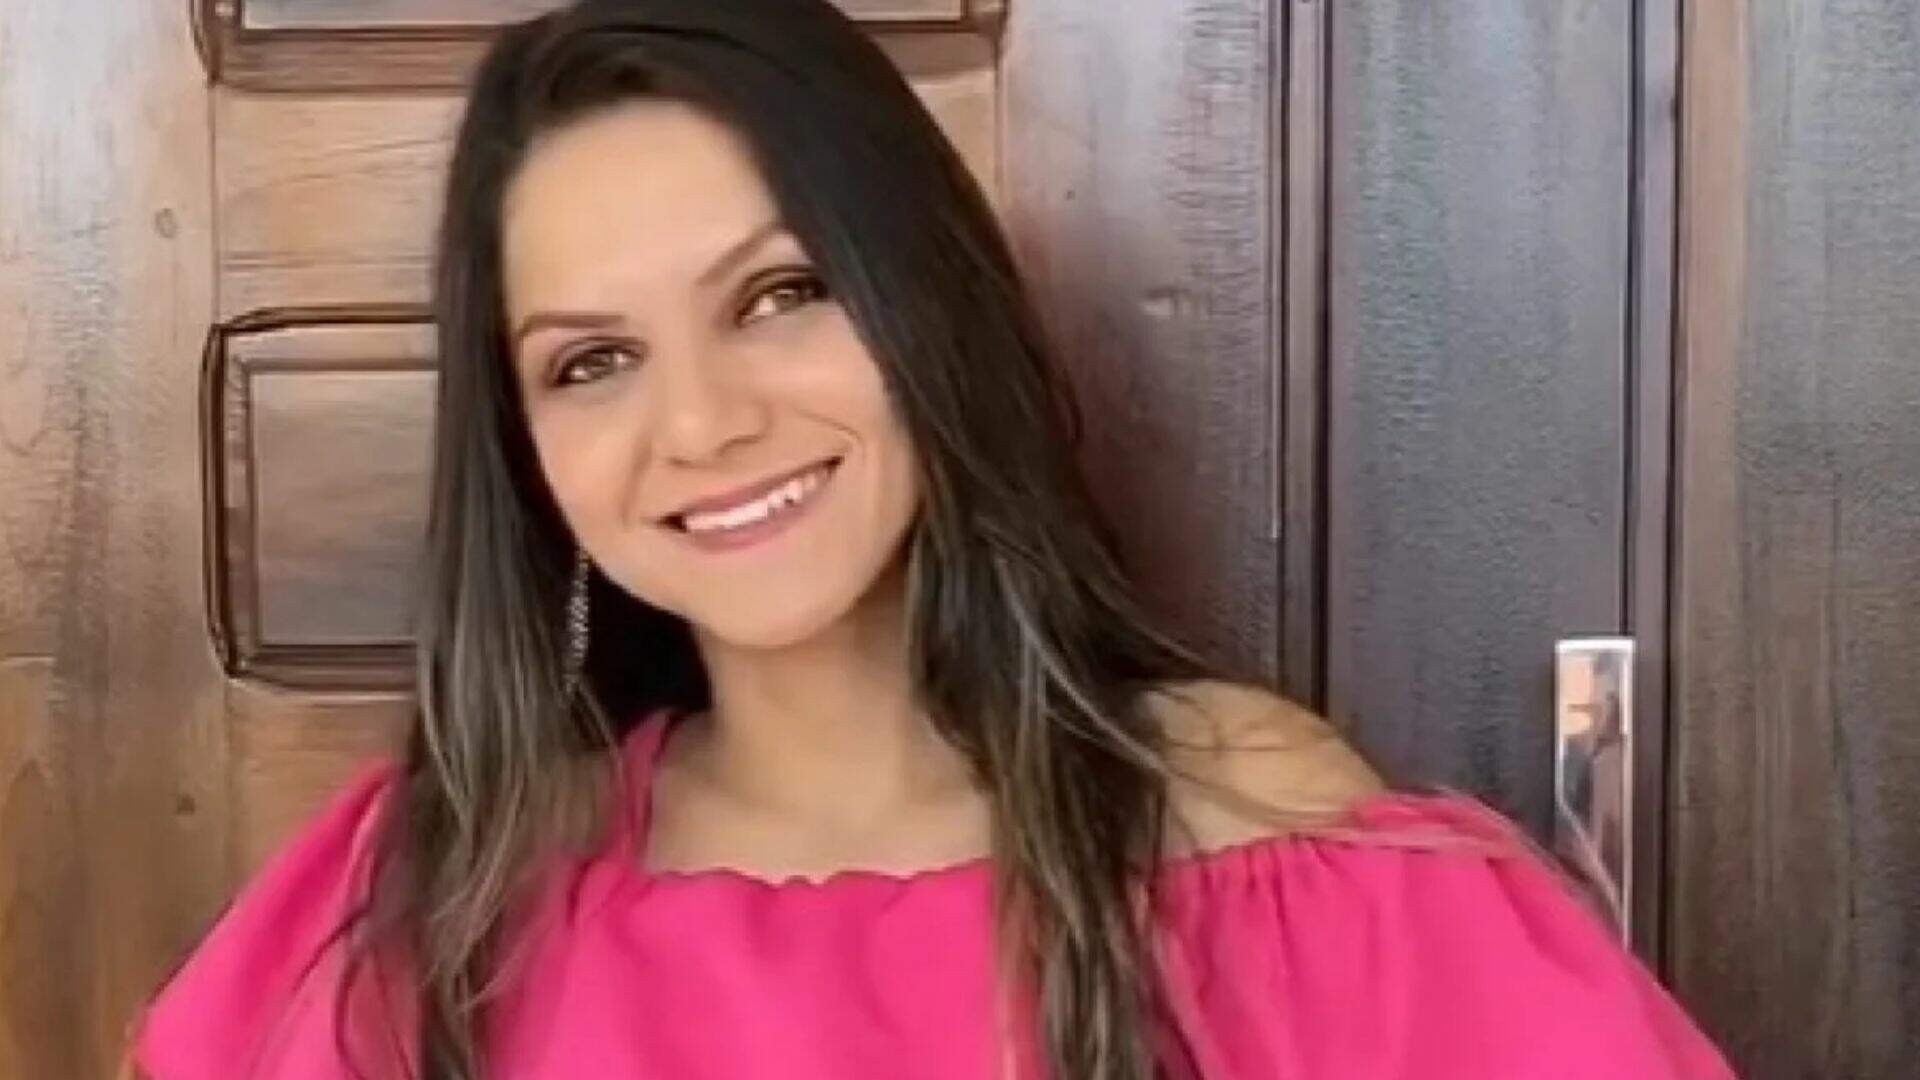 URGENTE: Cantora de forró morre em afogamento com o marido - Metropolitana FM